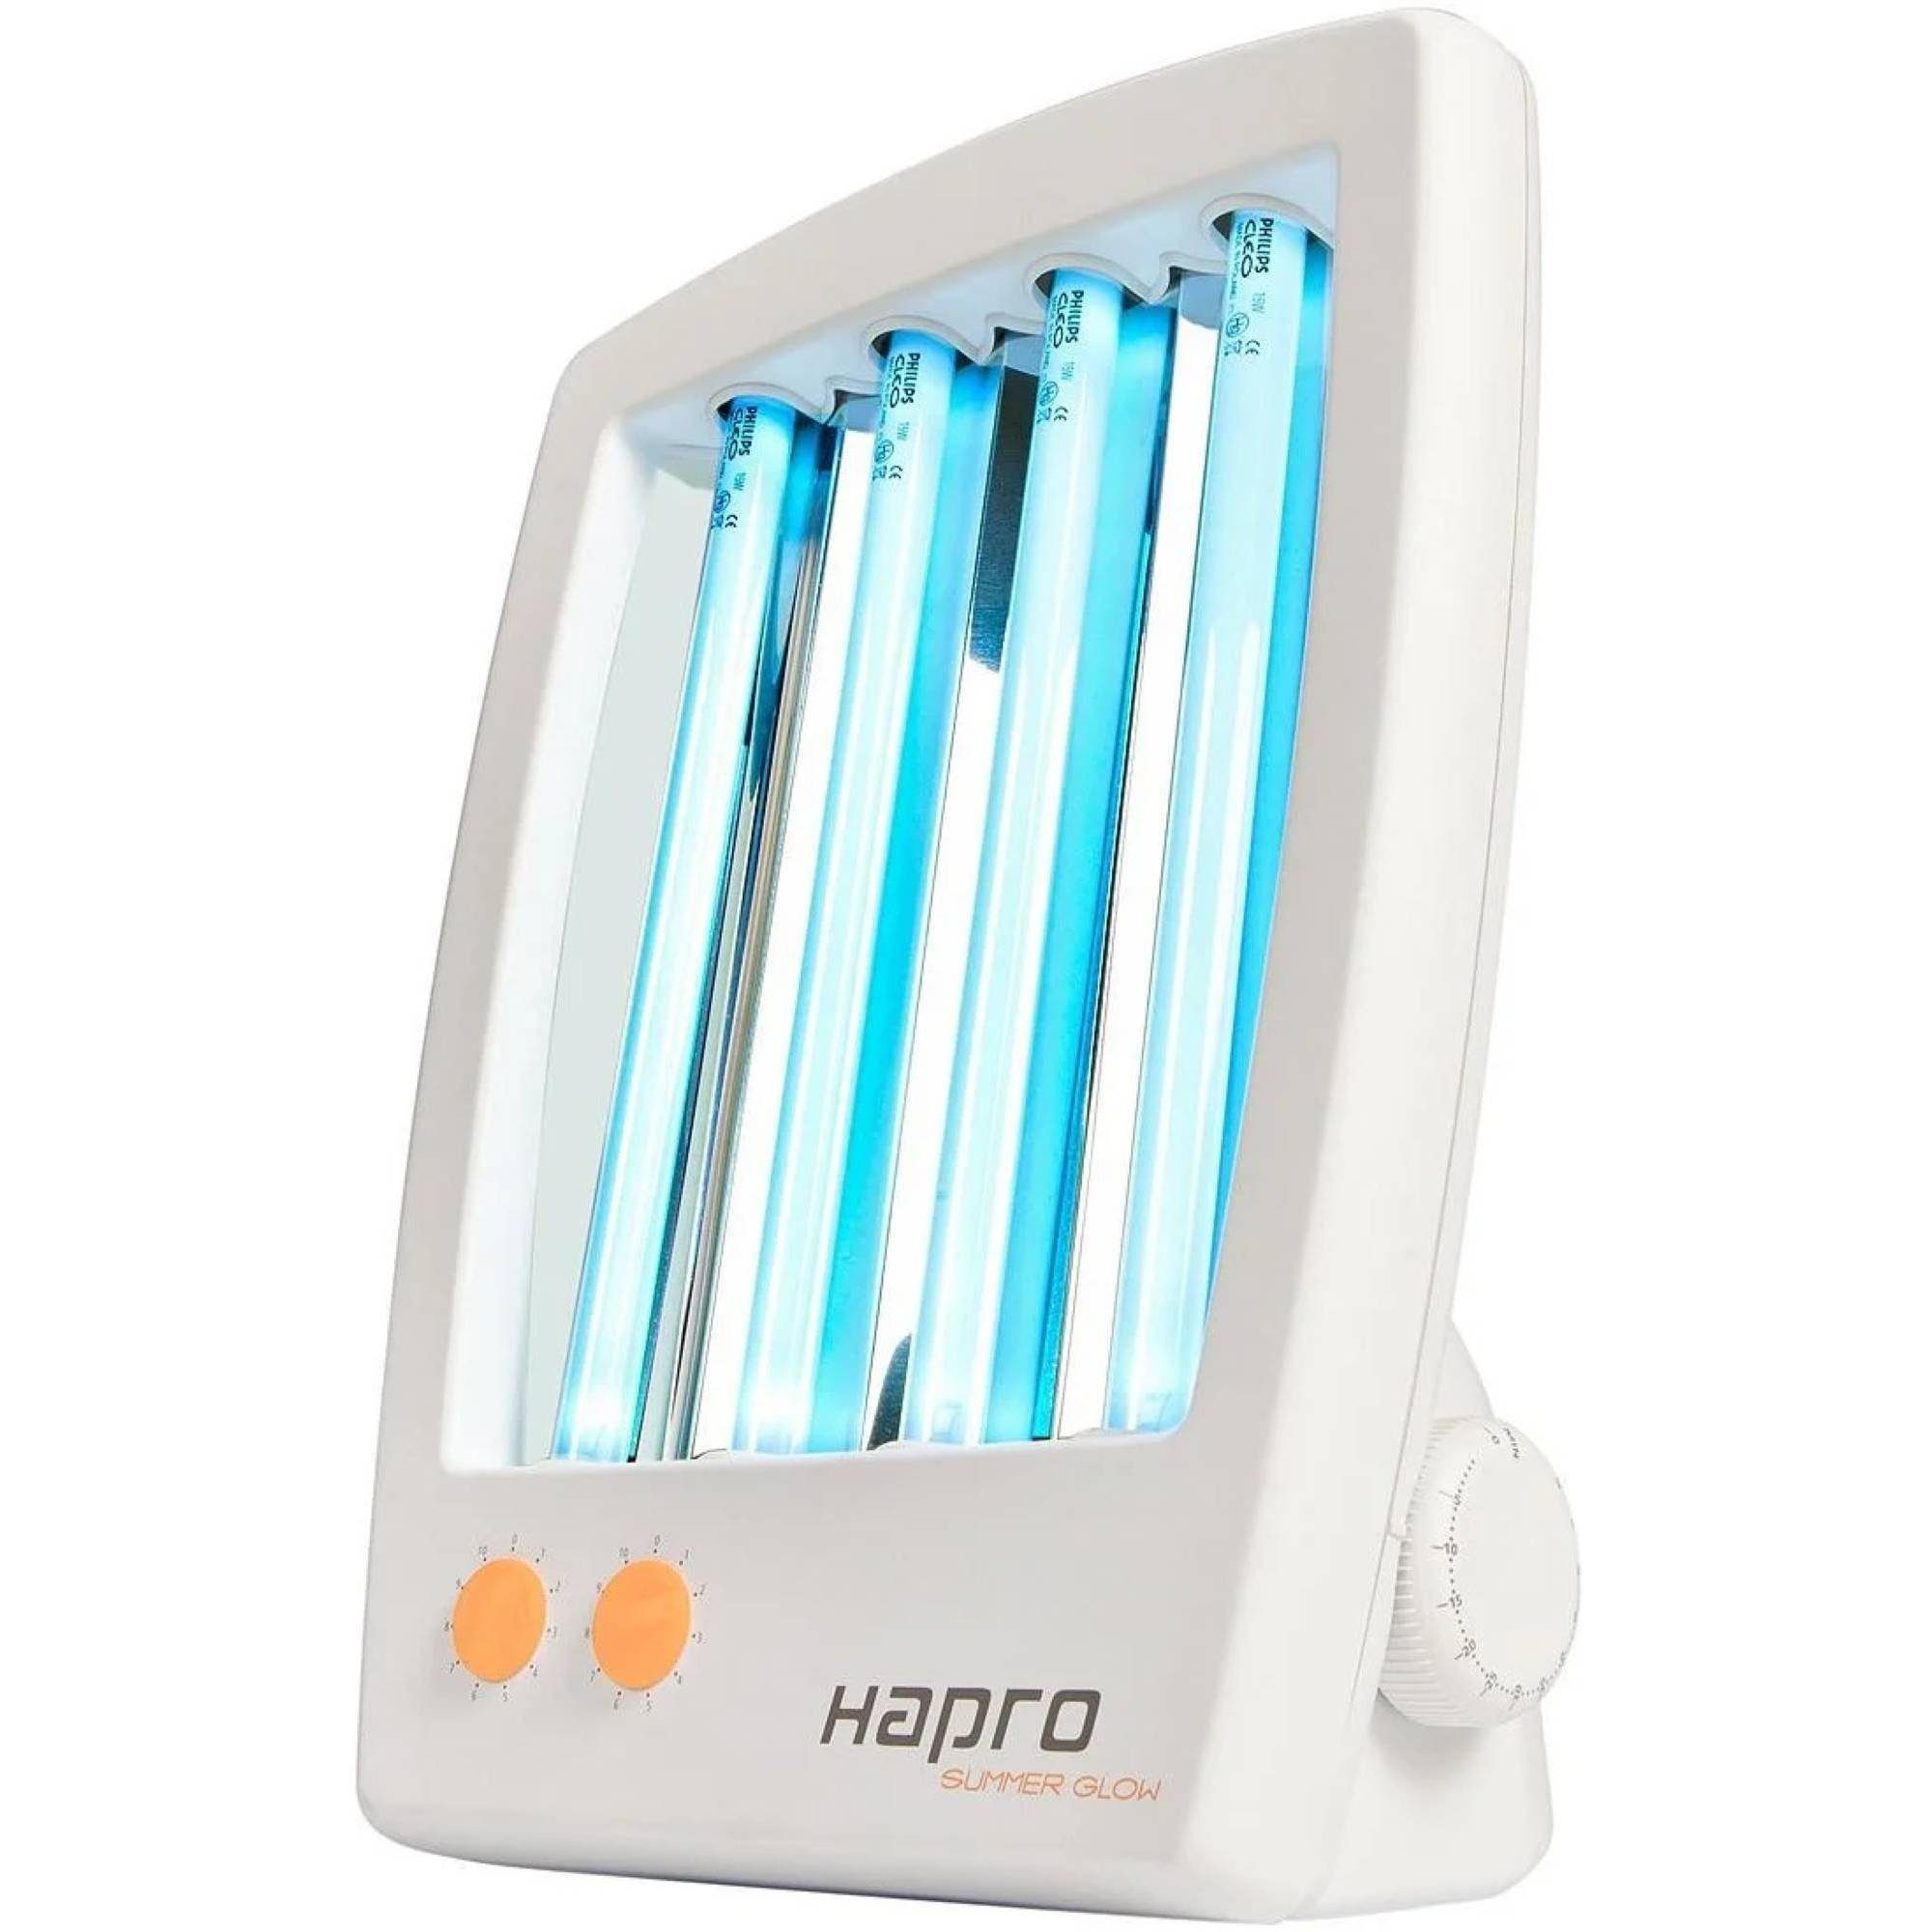 Hapro Summer Hapro HB175 Gesichtssolarium Glow Gesichtsbräuner